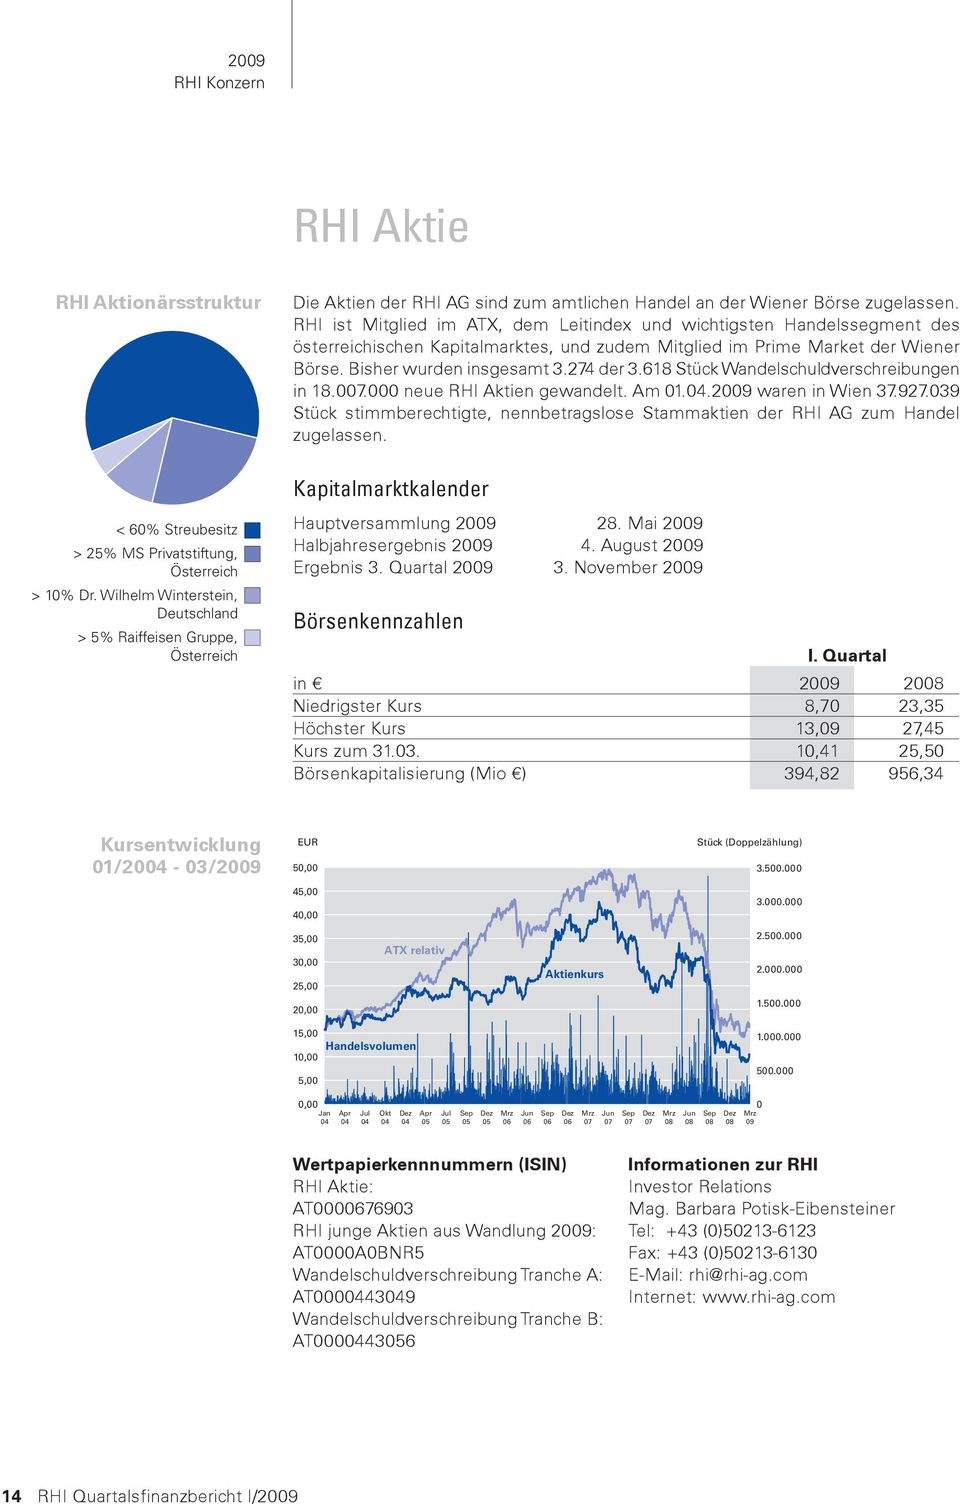 RHI ist Mitglied im ATX, dem Leitindex und wichtigsten Handelssegment des österreichischen Kapitalmarktes, und zudem Mitglied im Prime Market der Wiener Börse. Bisher wurden insgesamt 3.274 der 3.